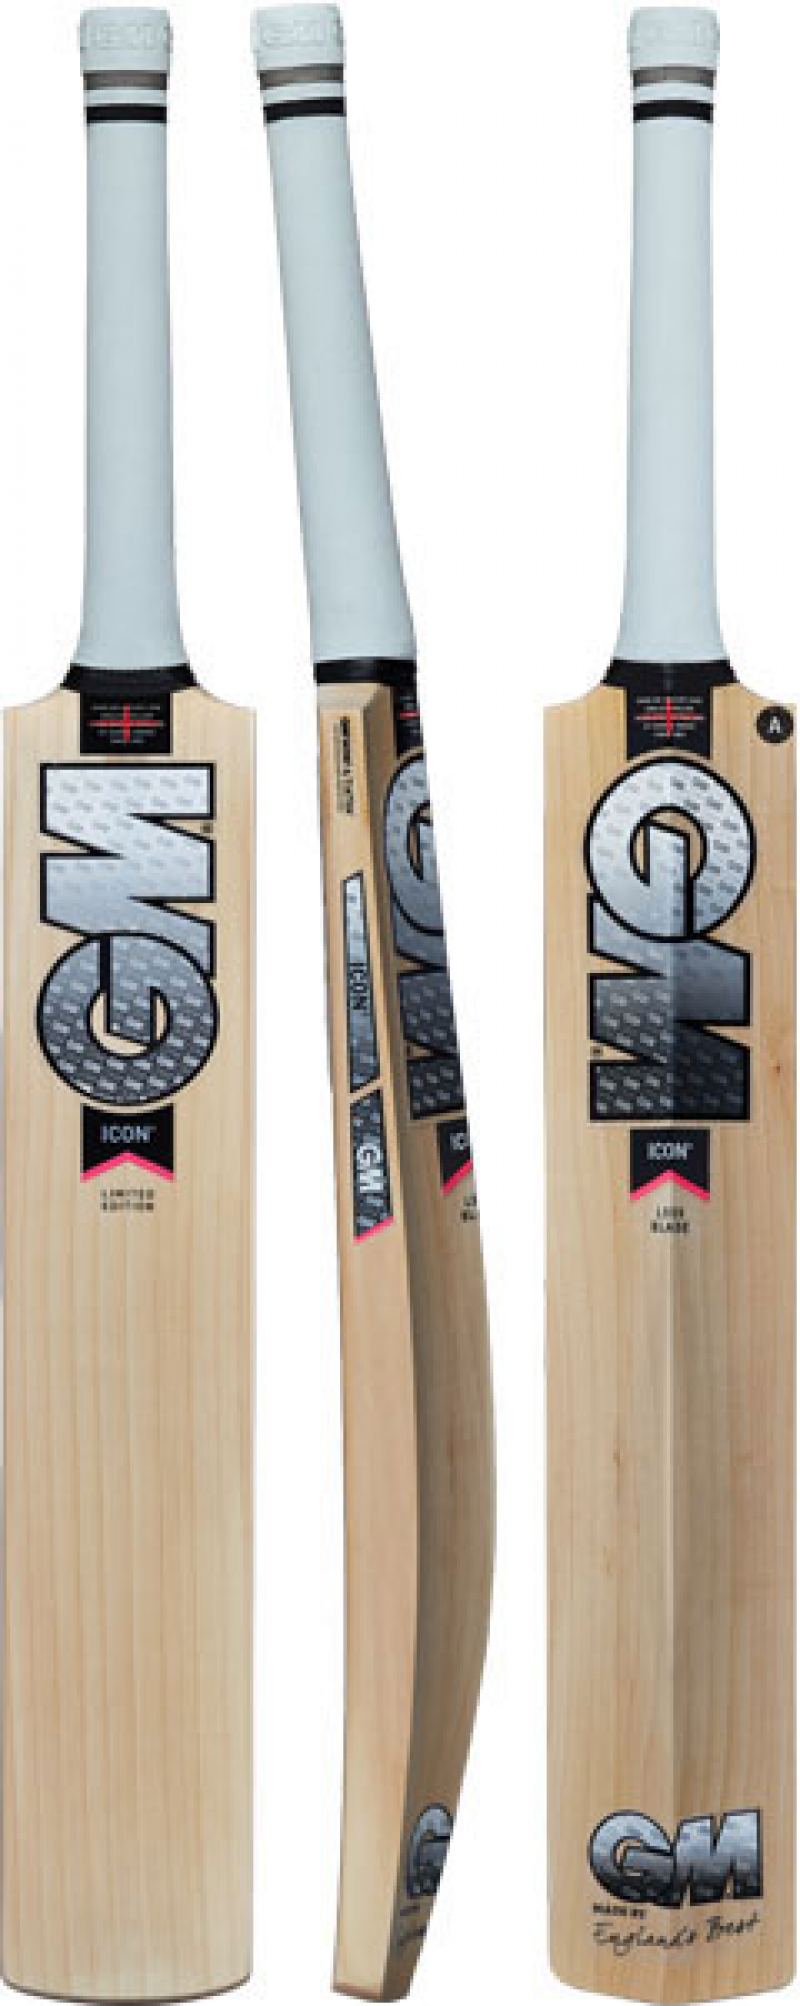 GM 1601286 EW Full Length Cricket Bat Cover Men's Blue/Black 